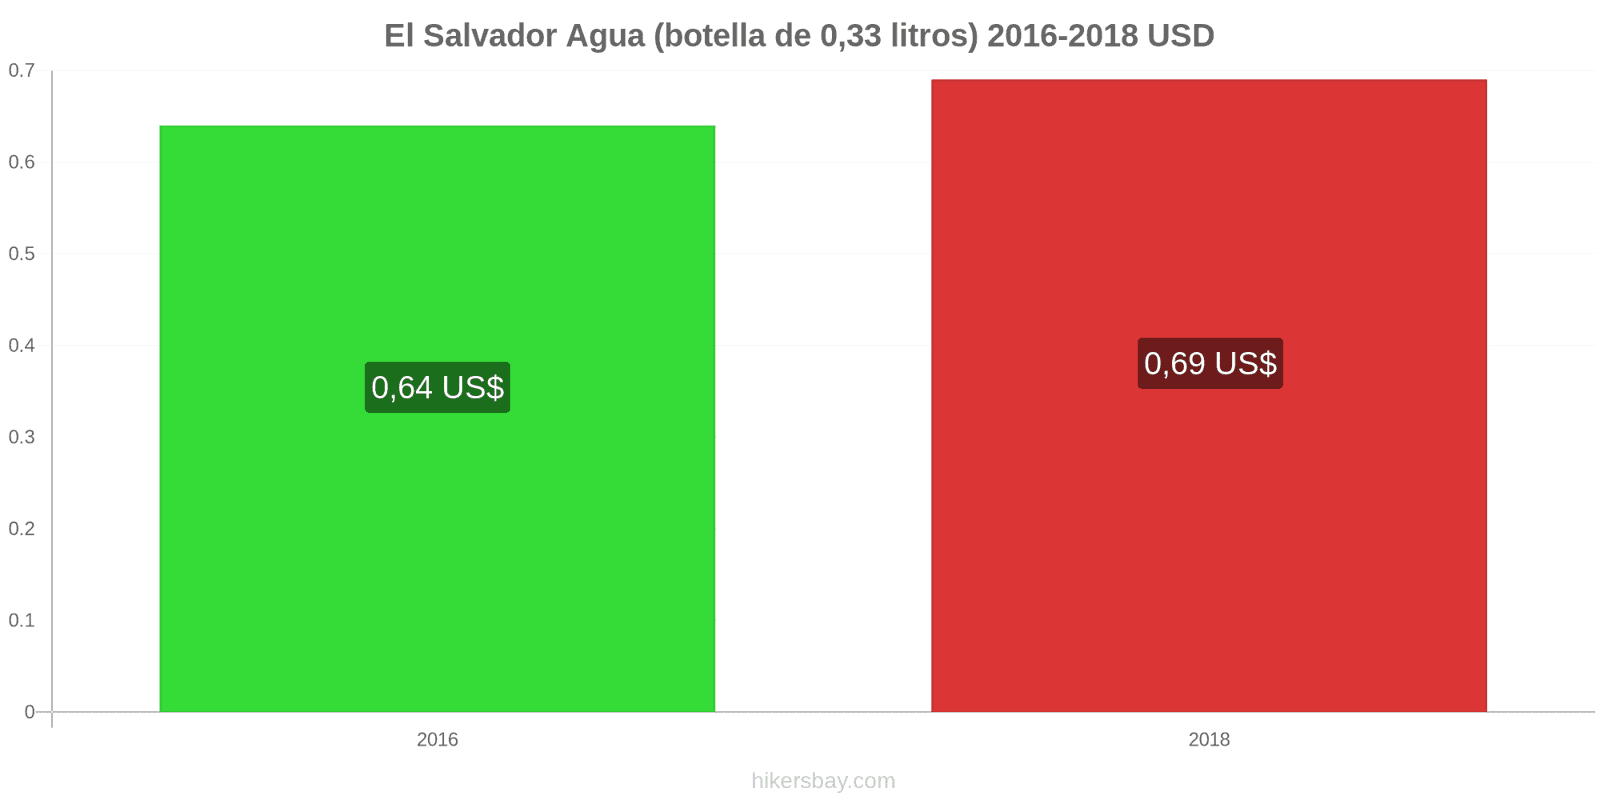 El Salvador cambios de precios Agua (botella de 0.33 litros) hikersbay.com